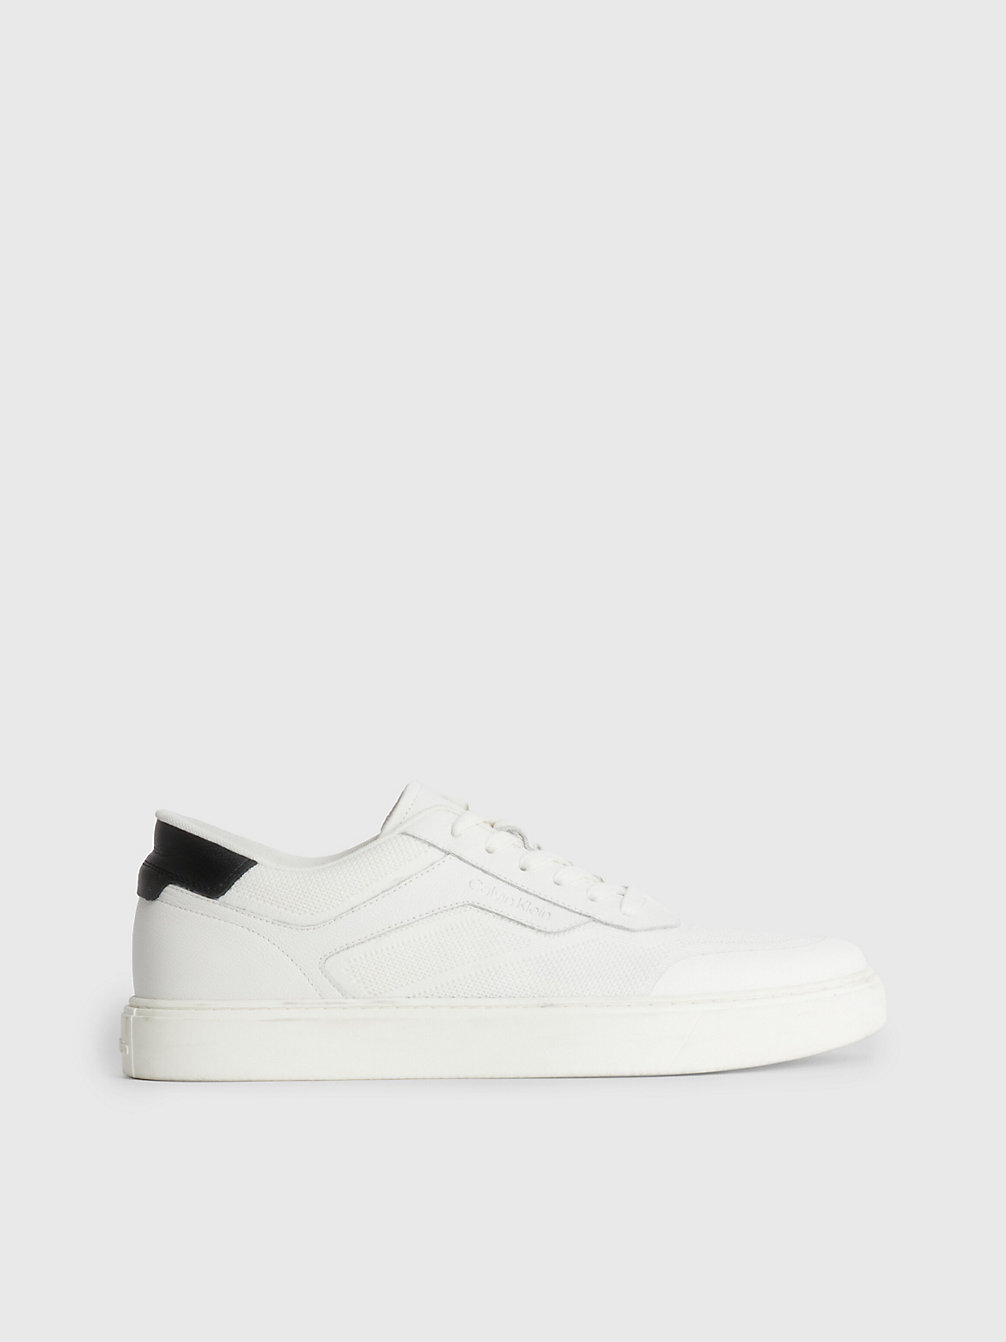 WHITE / BLACK > Sneakers Aus Leder Und Strick > undefined Herren - Calvin Klein